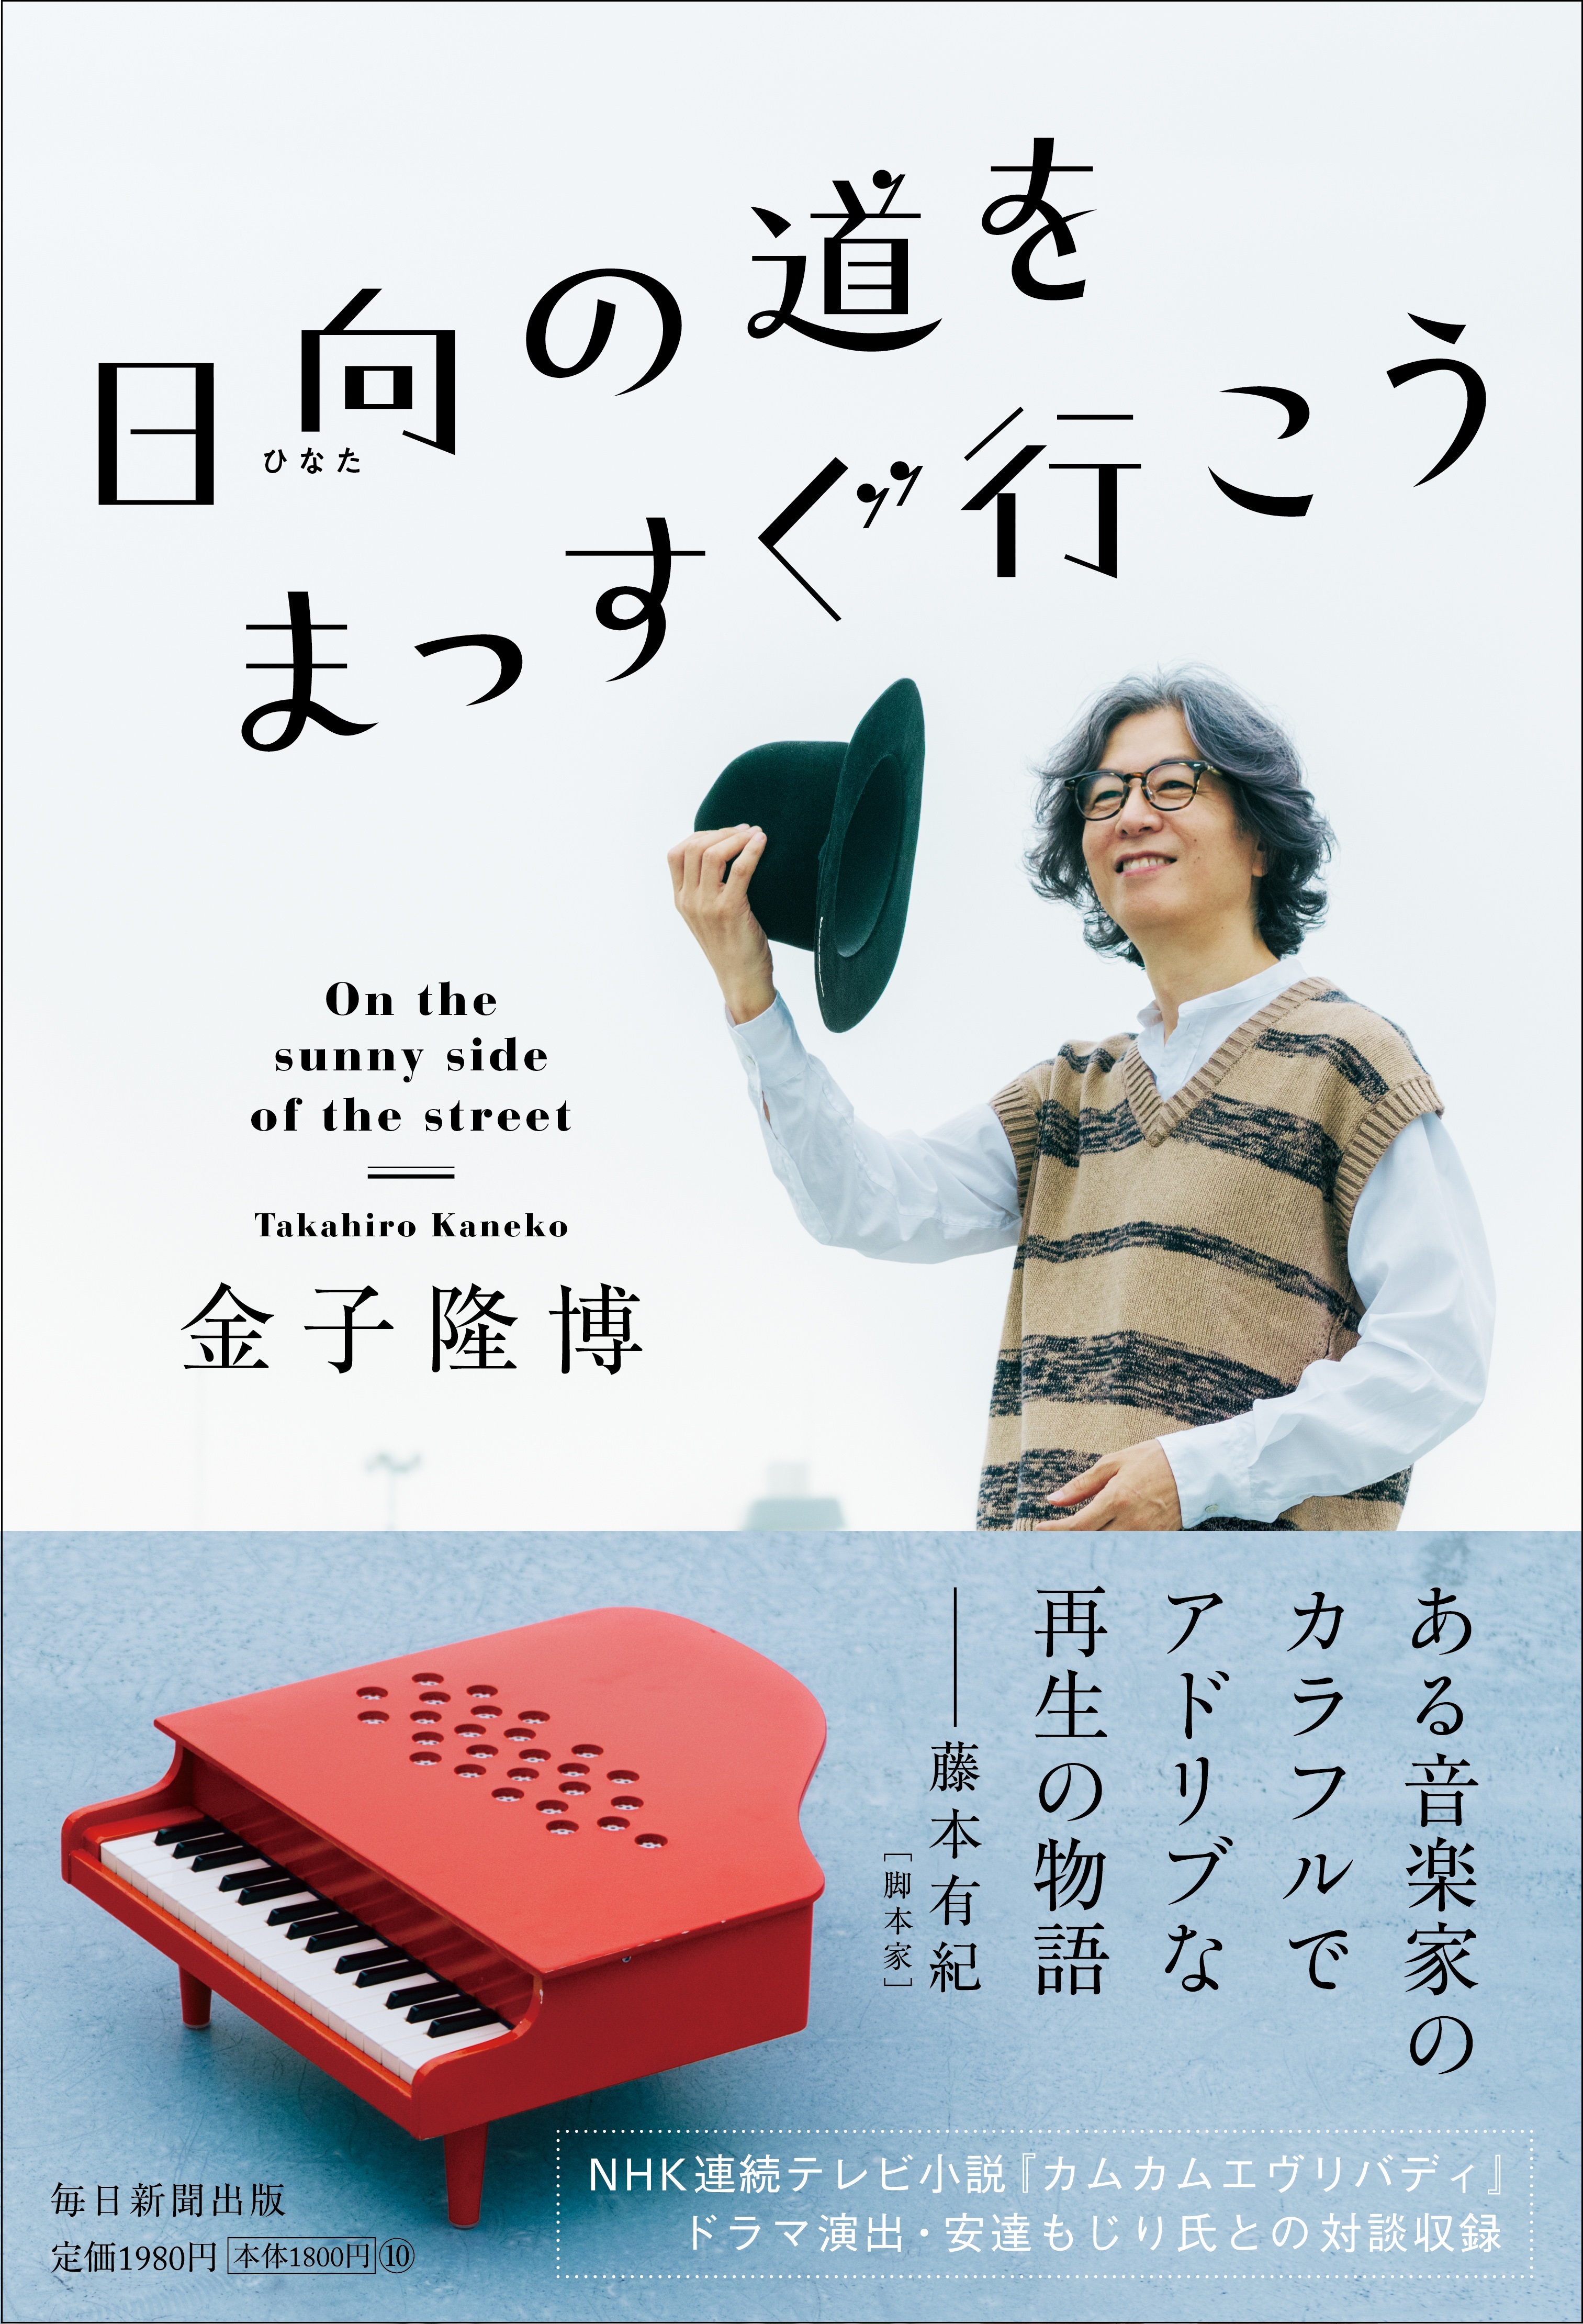 米米CLUBの金子隆博が音楽家人生や「職業性ジストニア」と
向き合った日々を綴った初の著書
『日向(ひなた)の道をまっすぐ行こう』
2022年12月5日発売